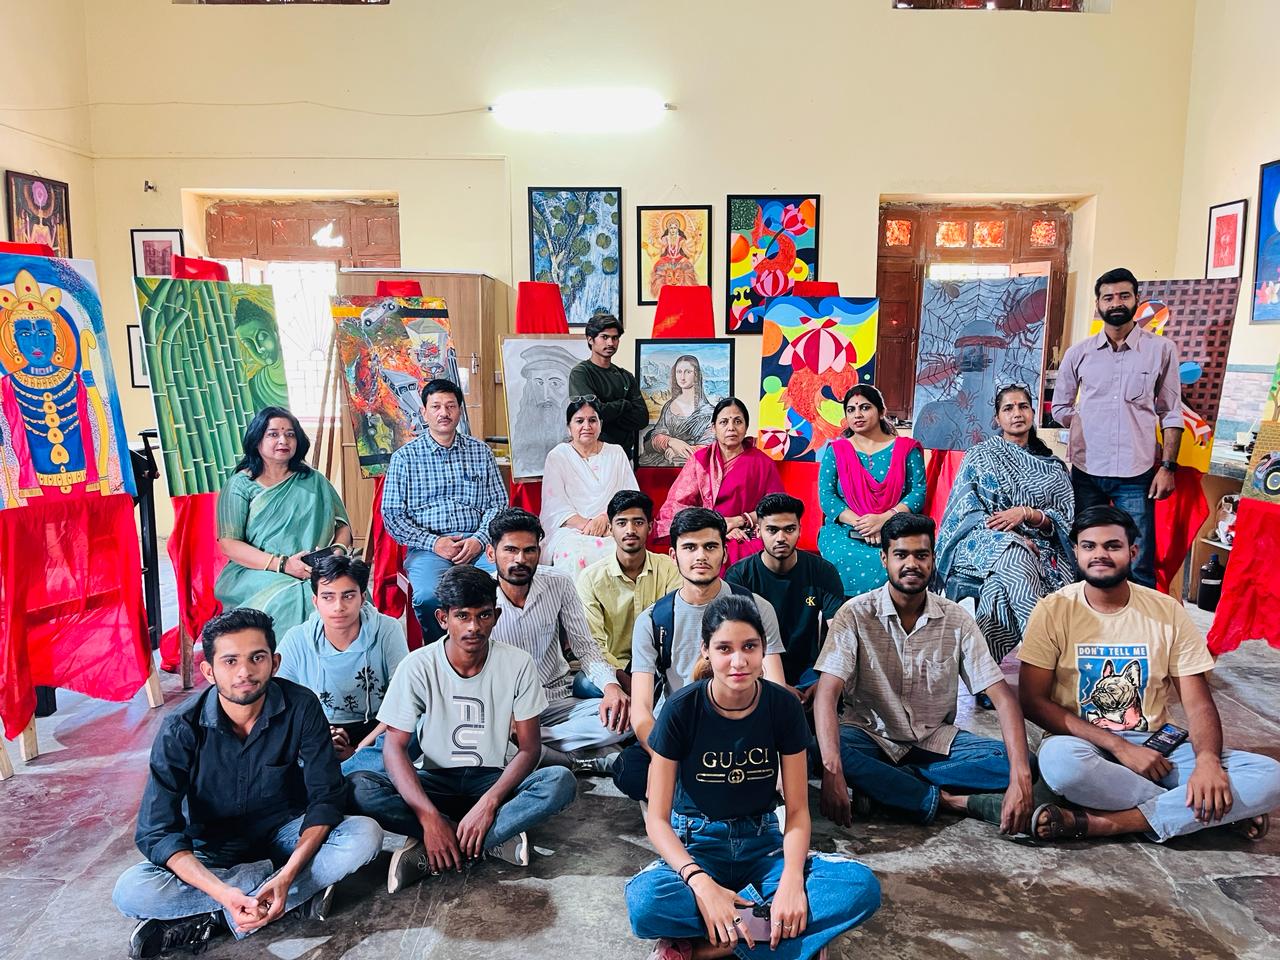 बीएनपीजी महाविद्यालय के दृश्य कला विभाग ने धूमधाम से मनाया विश्व कला दिवस